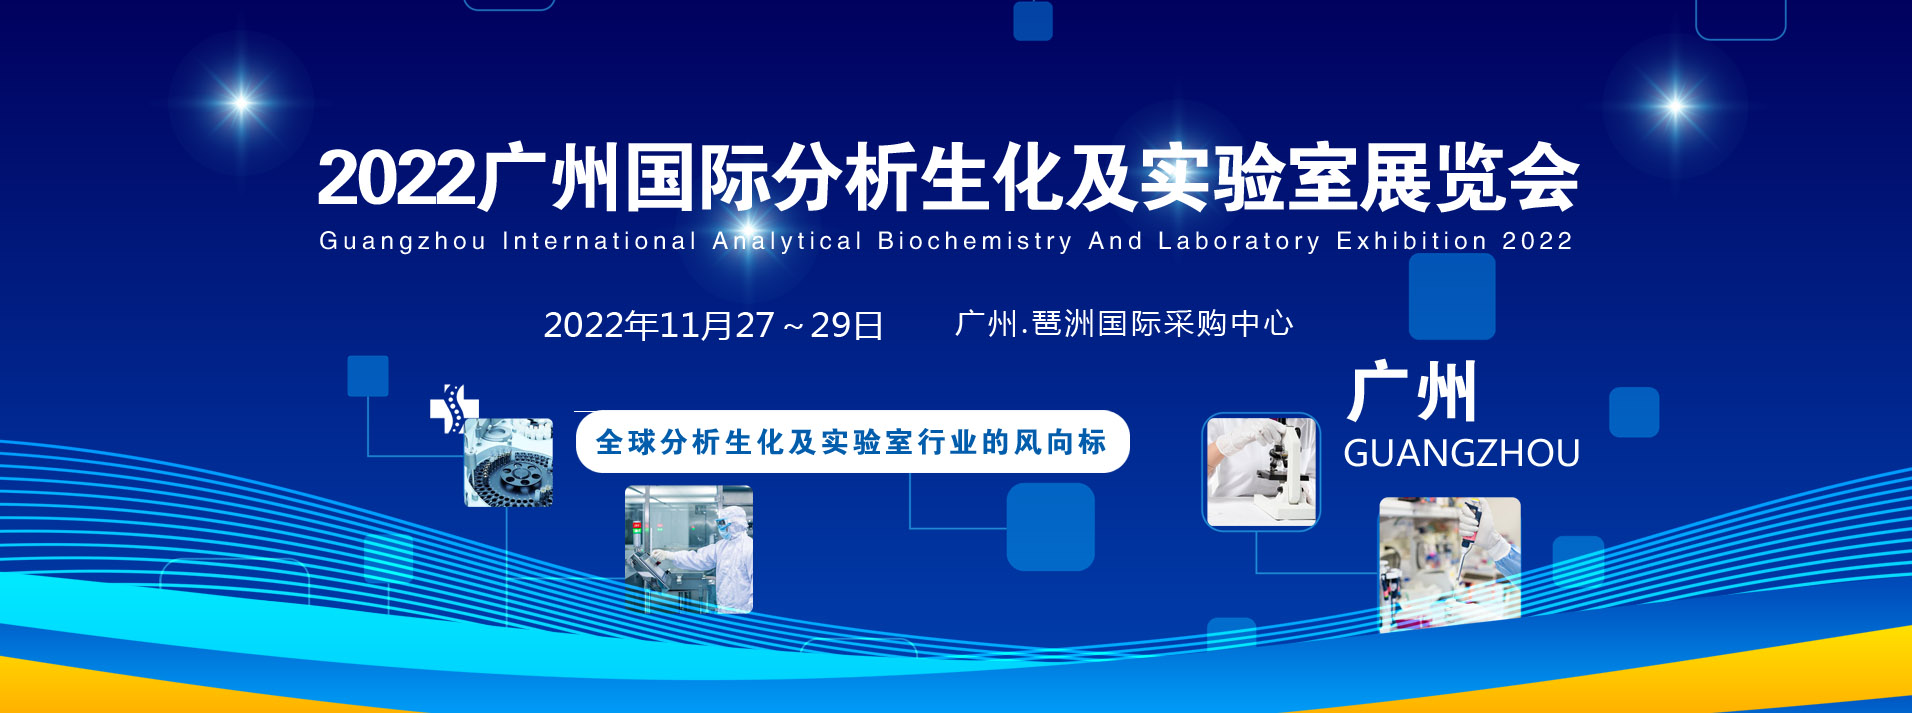 2022广州国际分析生化及实验室展览会.jpg